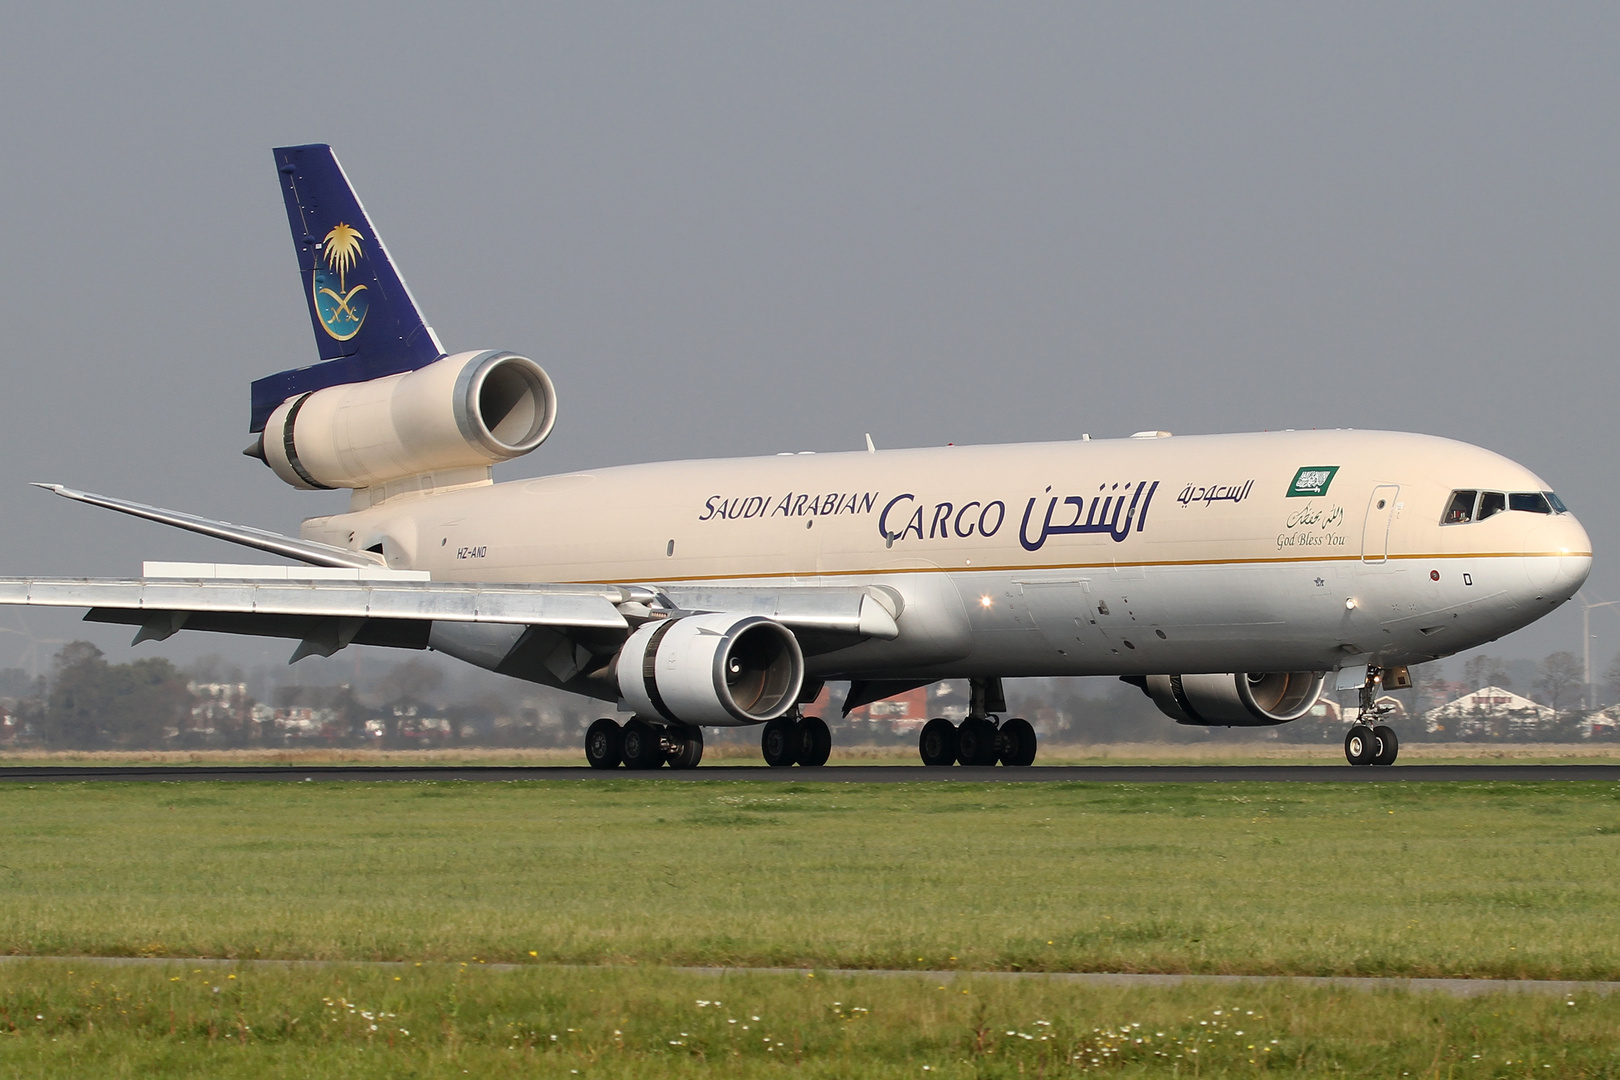 Saudi Arabian Airlines Cargo